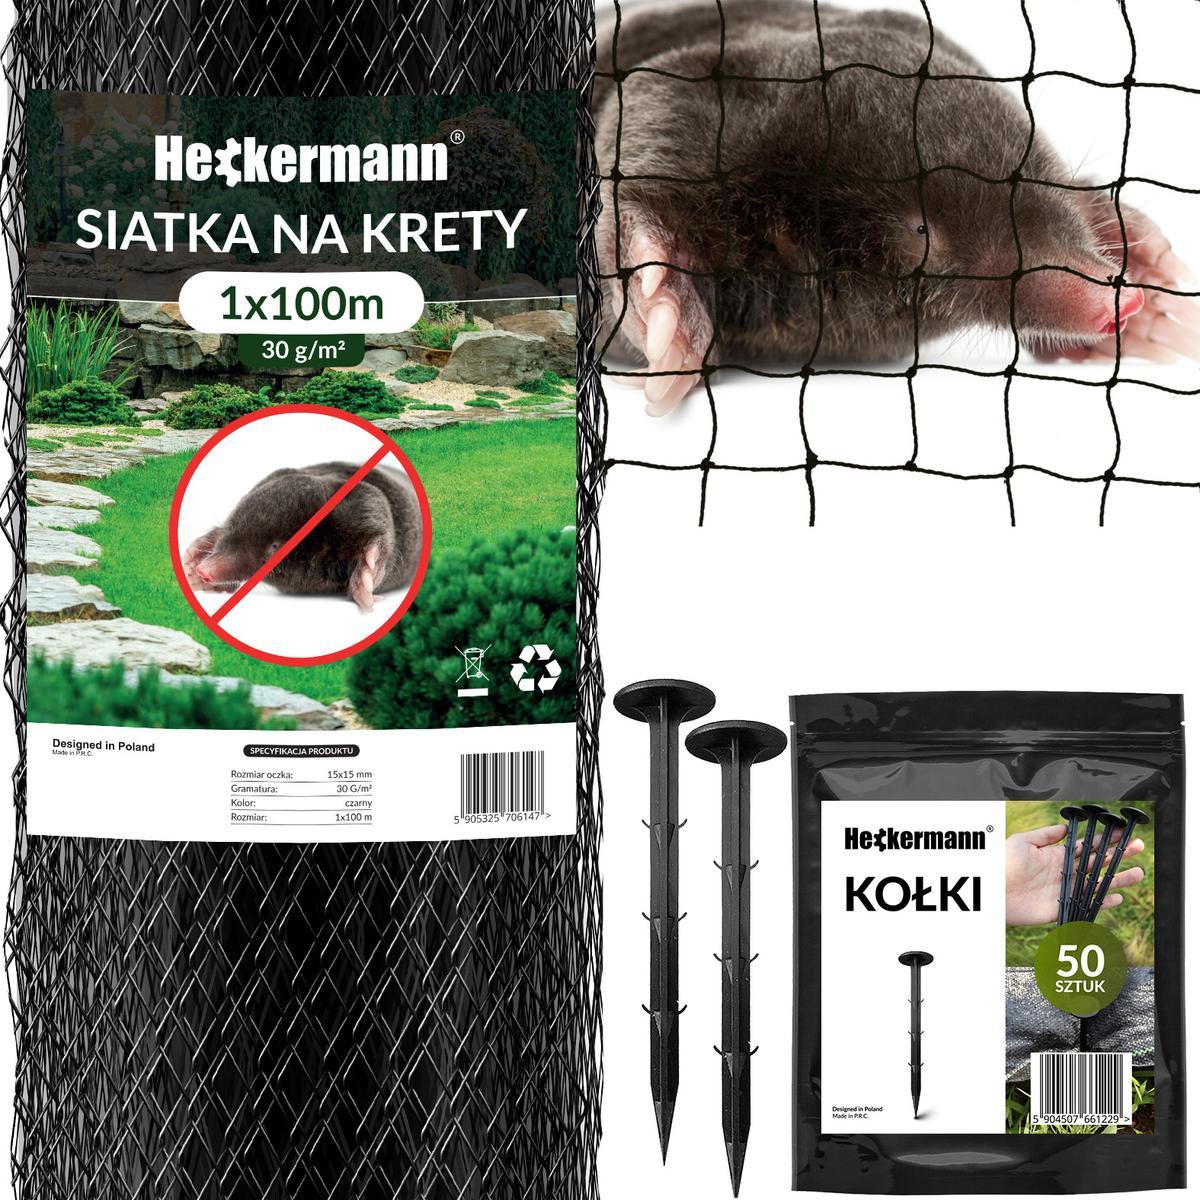 Zestaw Siatka na krety Heckermann 1x100m 30g/m2 + Kołki Czarne 50 szt nr. 1